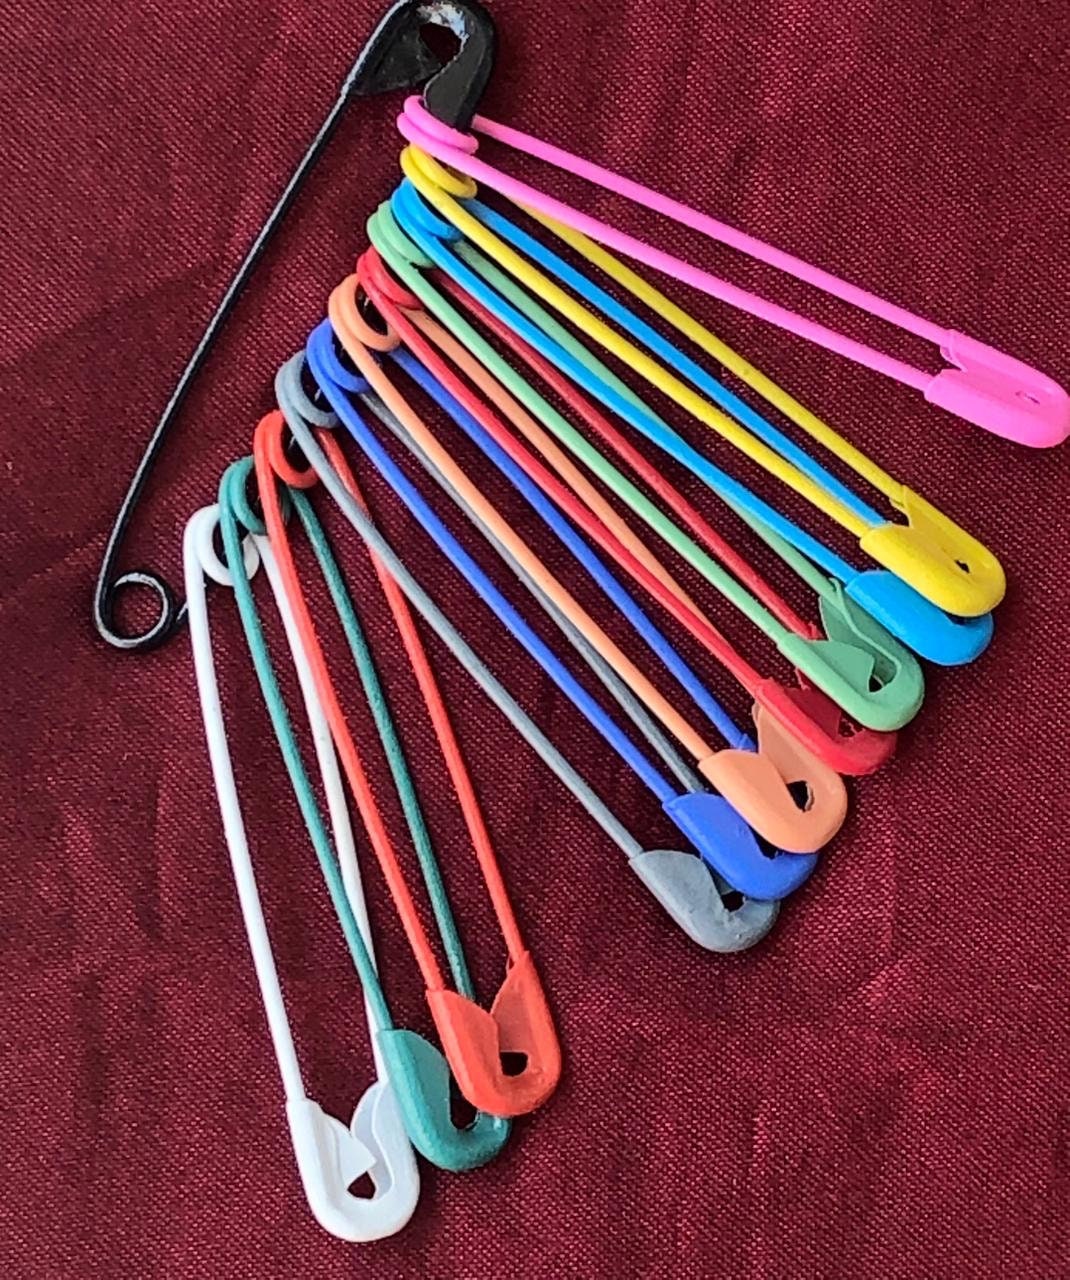 Baby Pins, Diaper Pins, Safty Pins. Colored Pins, Colored Diaper Pins.  Vintage Diaper Pins. 